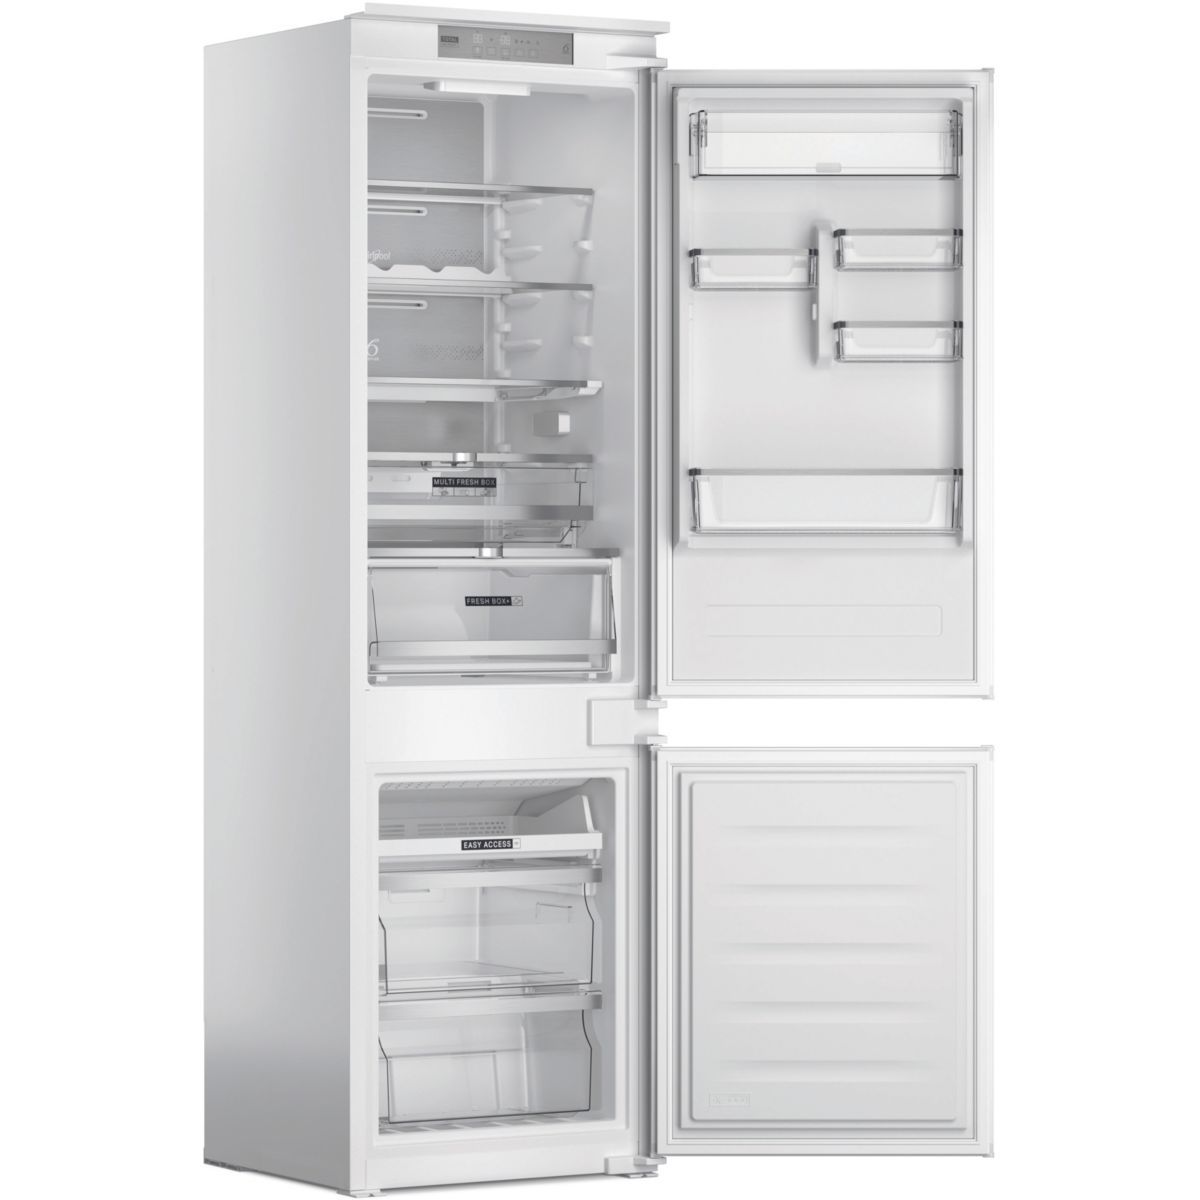 Réfrigérateur BOSCH KGN33NWEB - Maxi Discount